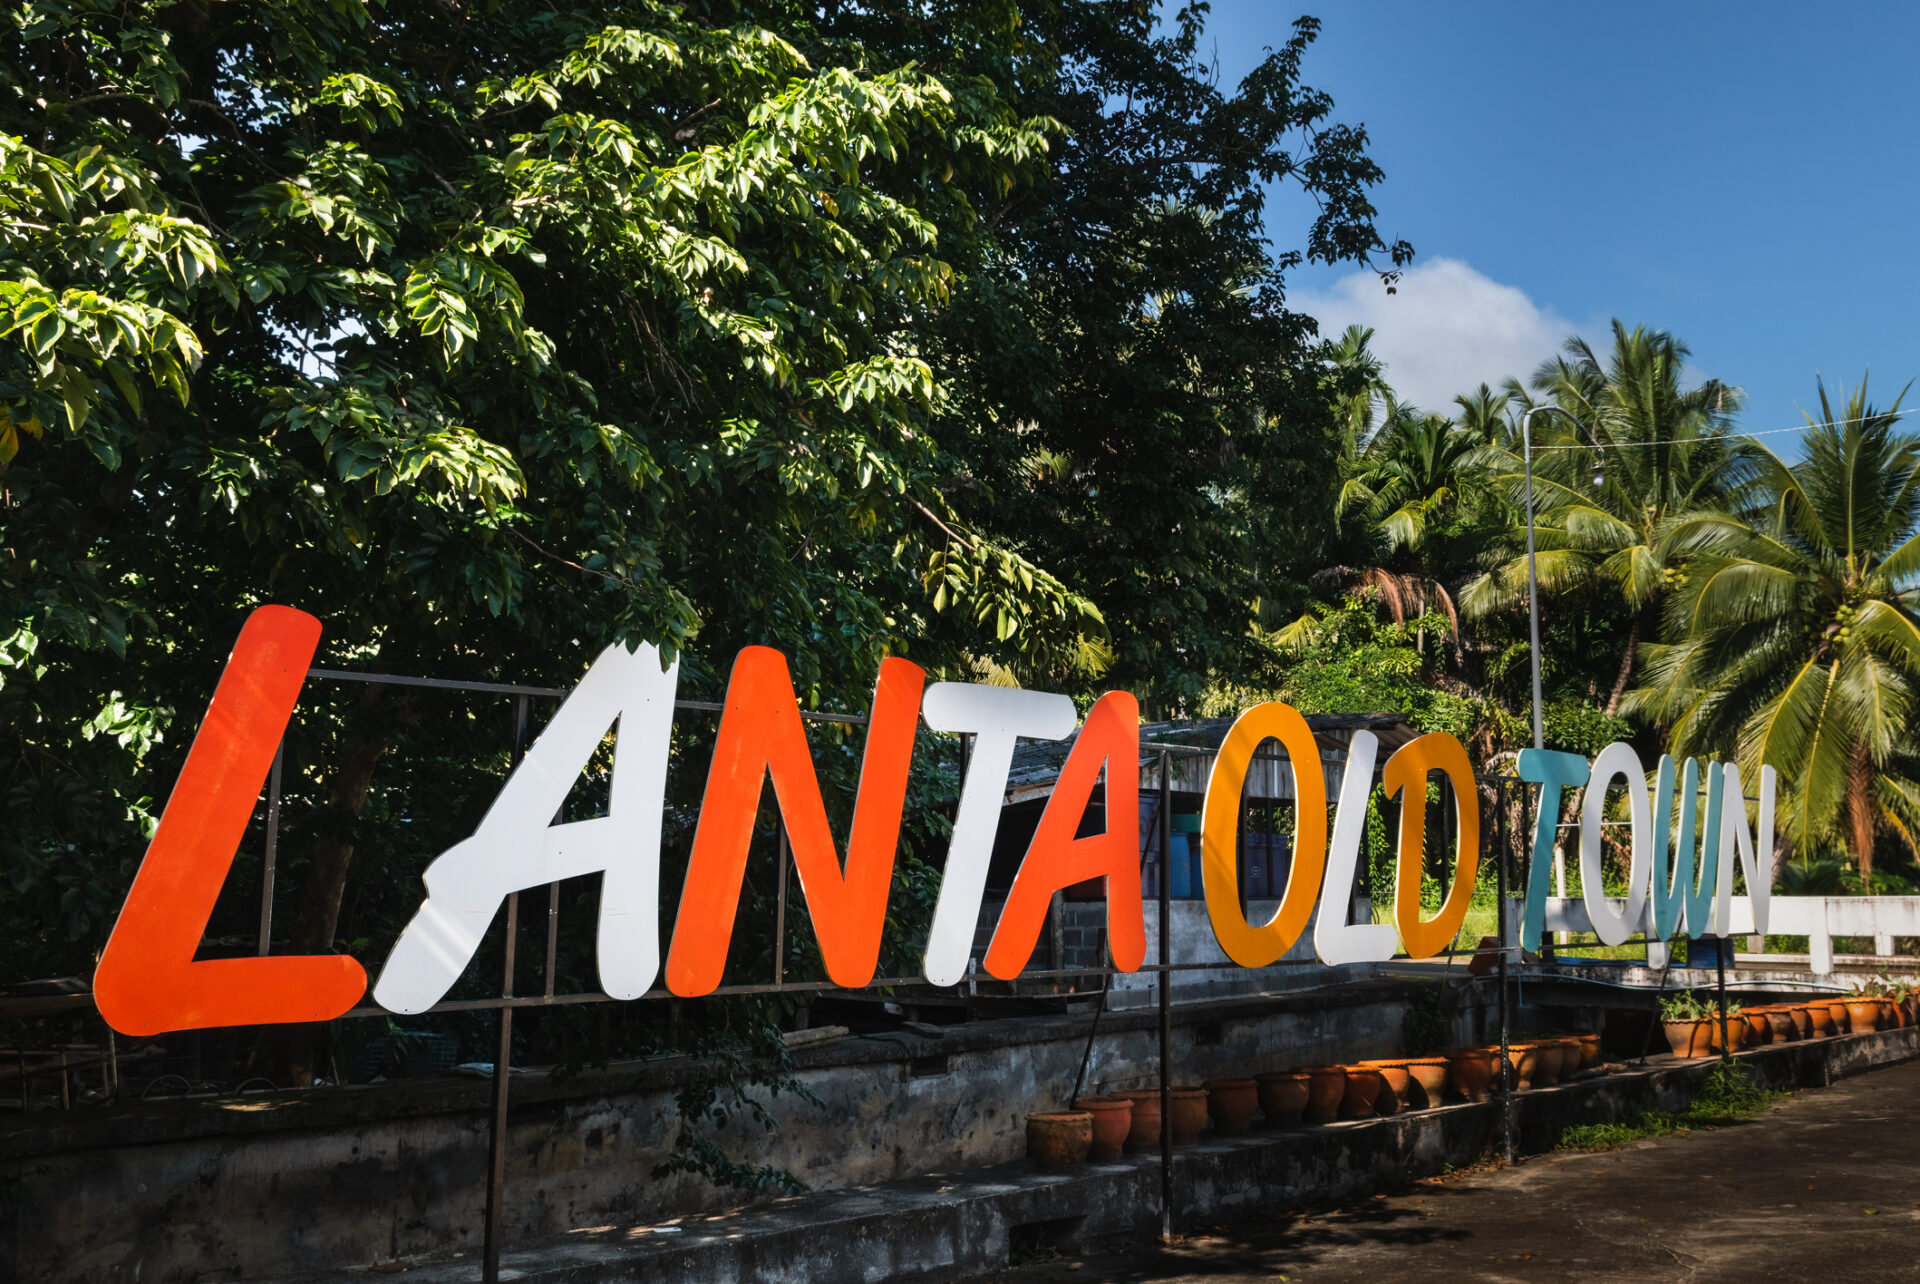 Find din næste eventyrrejse: Billeder og information om Ianto Old Town og Jungle Camp. Ideel for backpackere og naturelskere